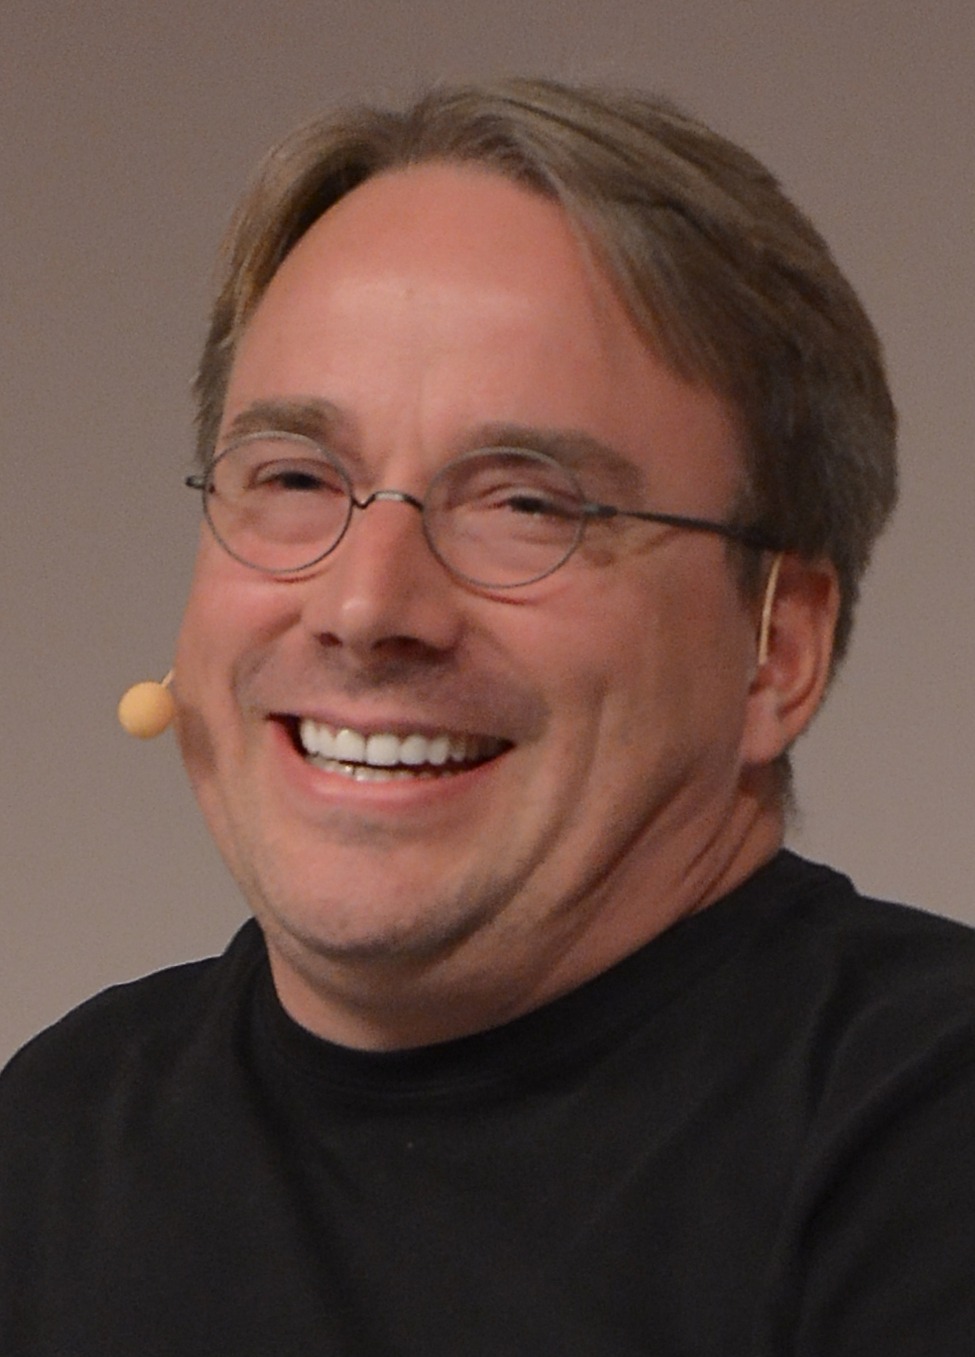 La risposta educata e puntuale di Linus Torvalds ad uno sviluppatore critico sullo scheduler del Kernel